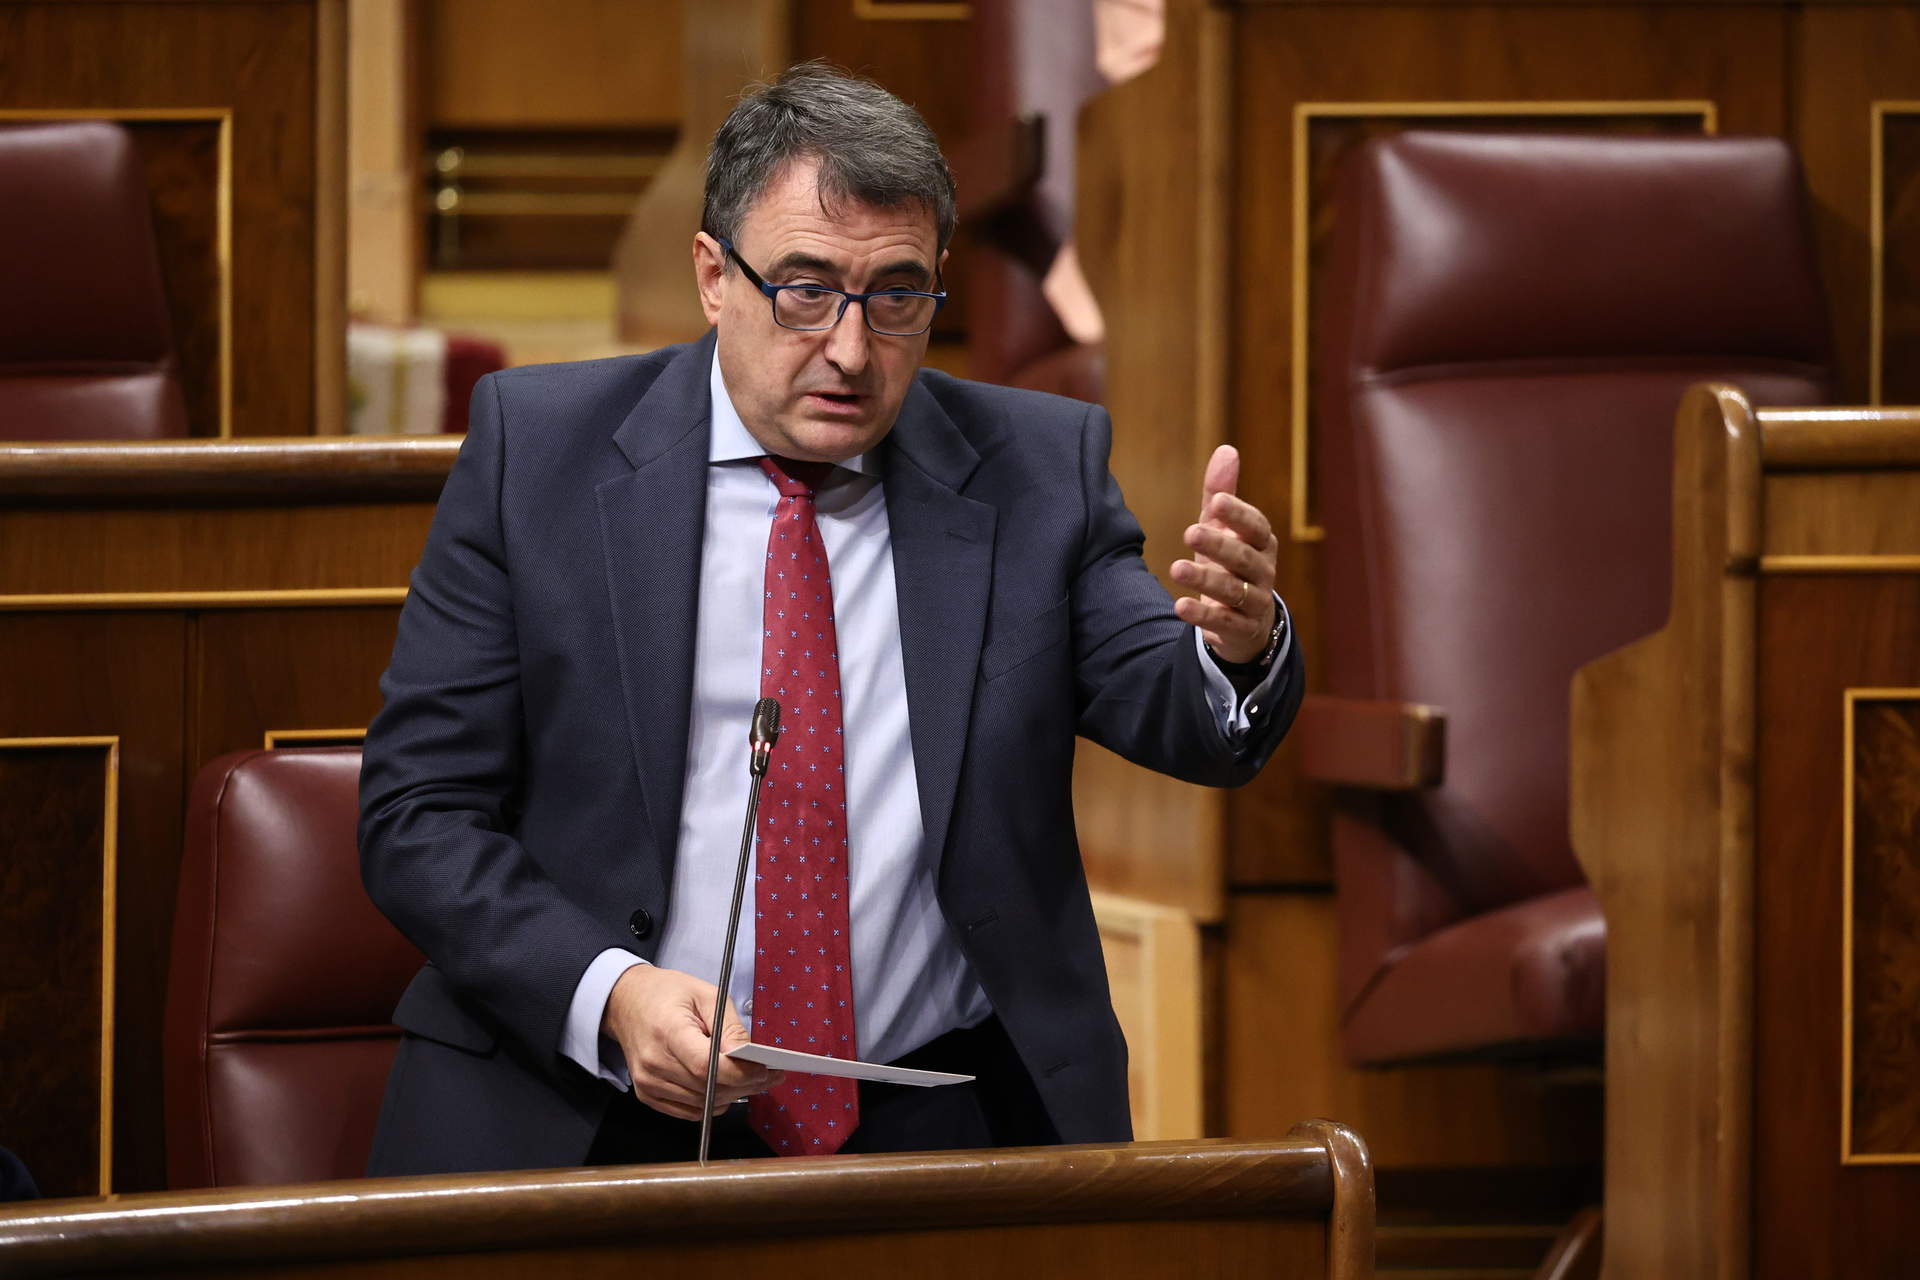 Cargar máis
El portavoz del PNV en el Congreso, Aitor Esteban, interviene durante una sesión plenaria en el Congreso de los Diputados, a 2 de noviembre de 2022, en Madrid (España).